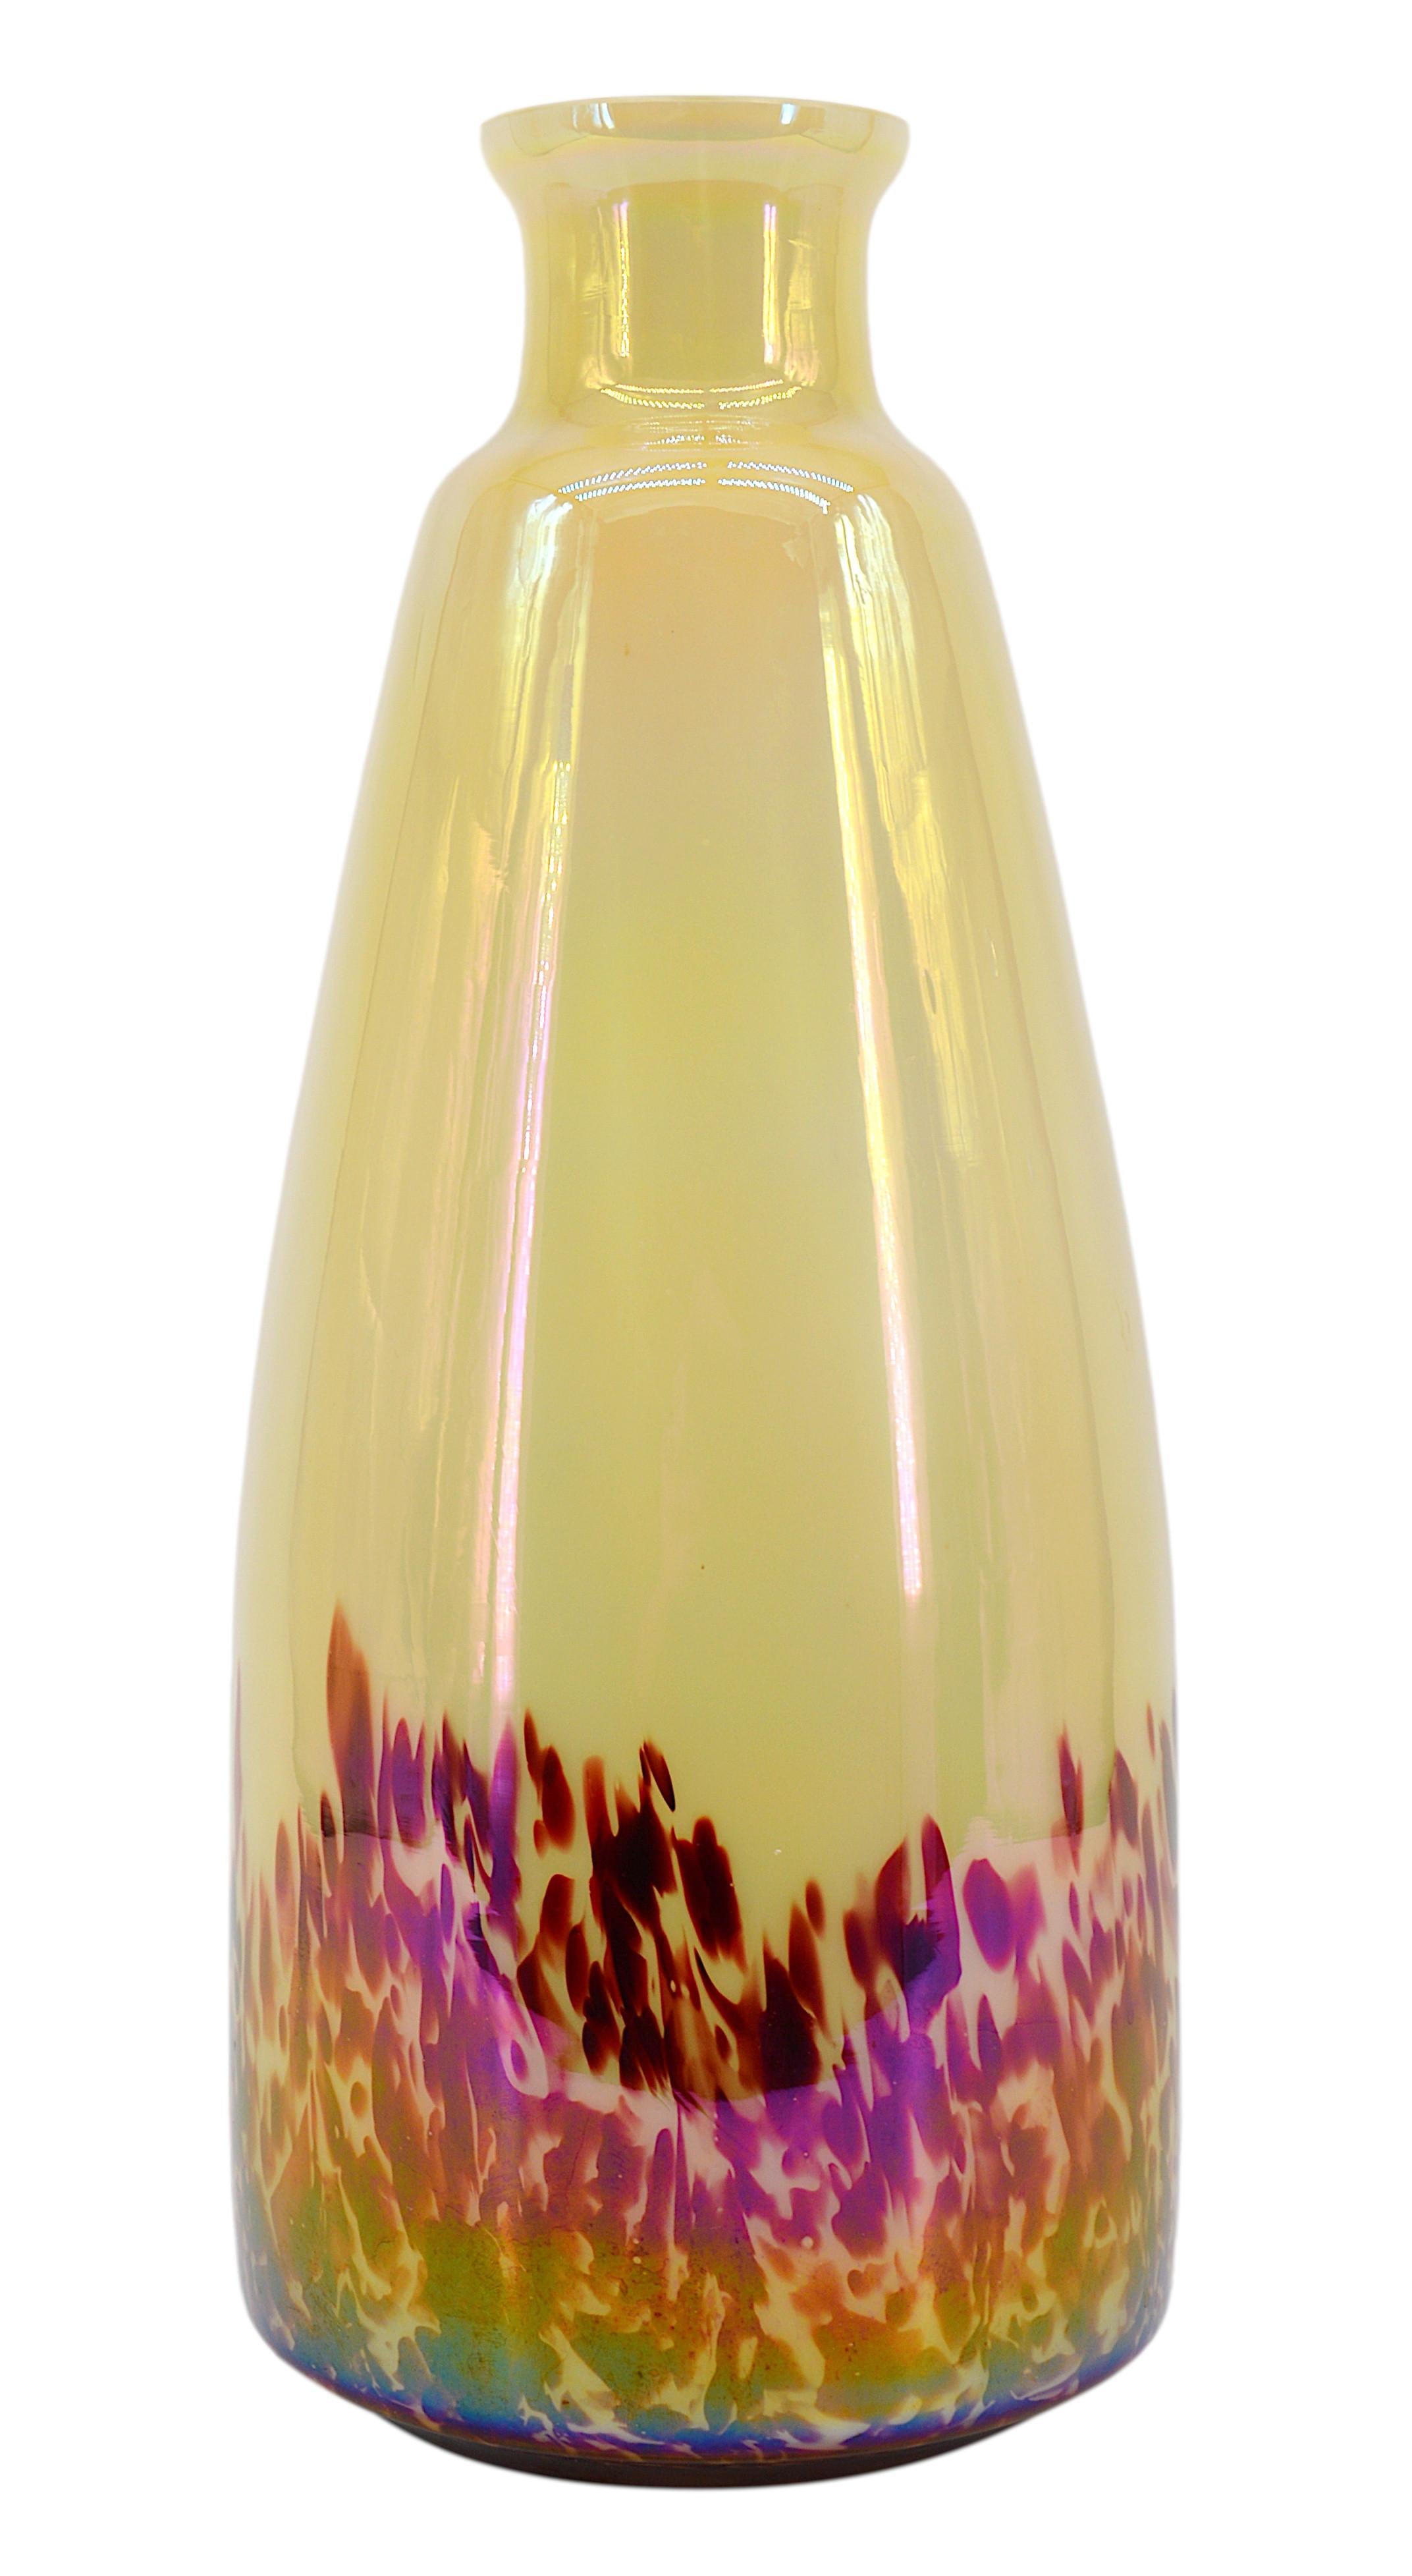 Grand vase en verre d'art de KRALIK (Bohemia), vers 1920. Double verre soufflé avec un effet irisé sur la couche extérieure. Mesures : Hauteur : 16.1